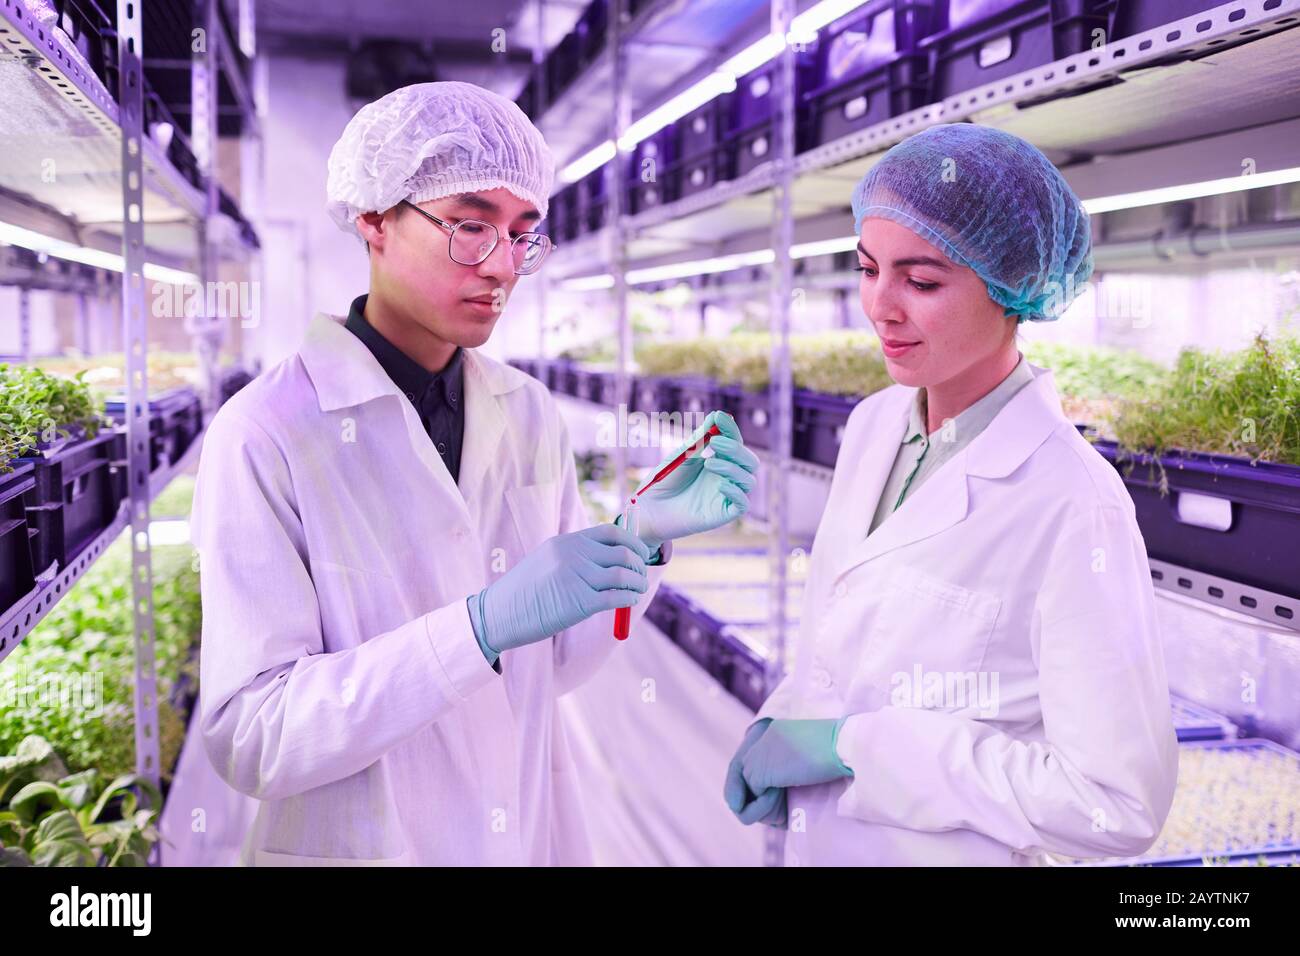 Girovita ritratto di due scienziati che tengono tubo di vetro con liquido rosso mentre lavorano in serra agricola, copia spazio Foto Stock